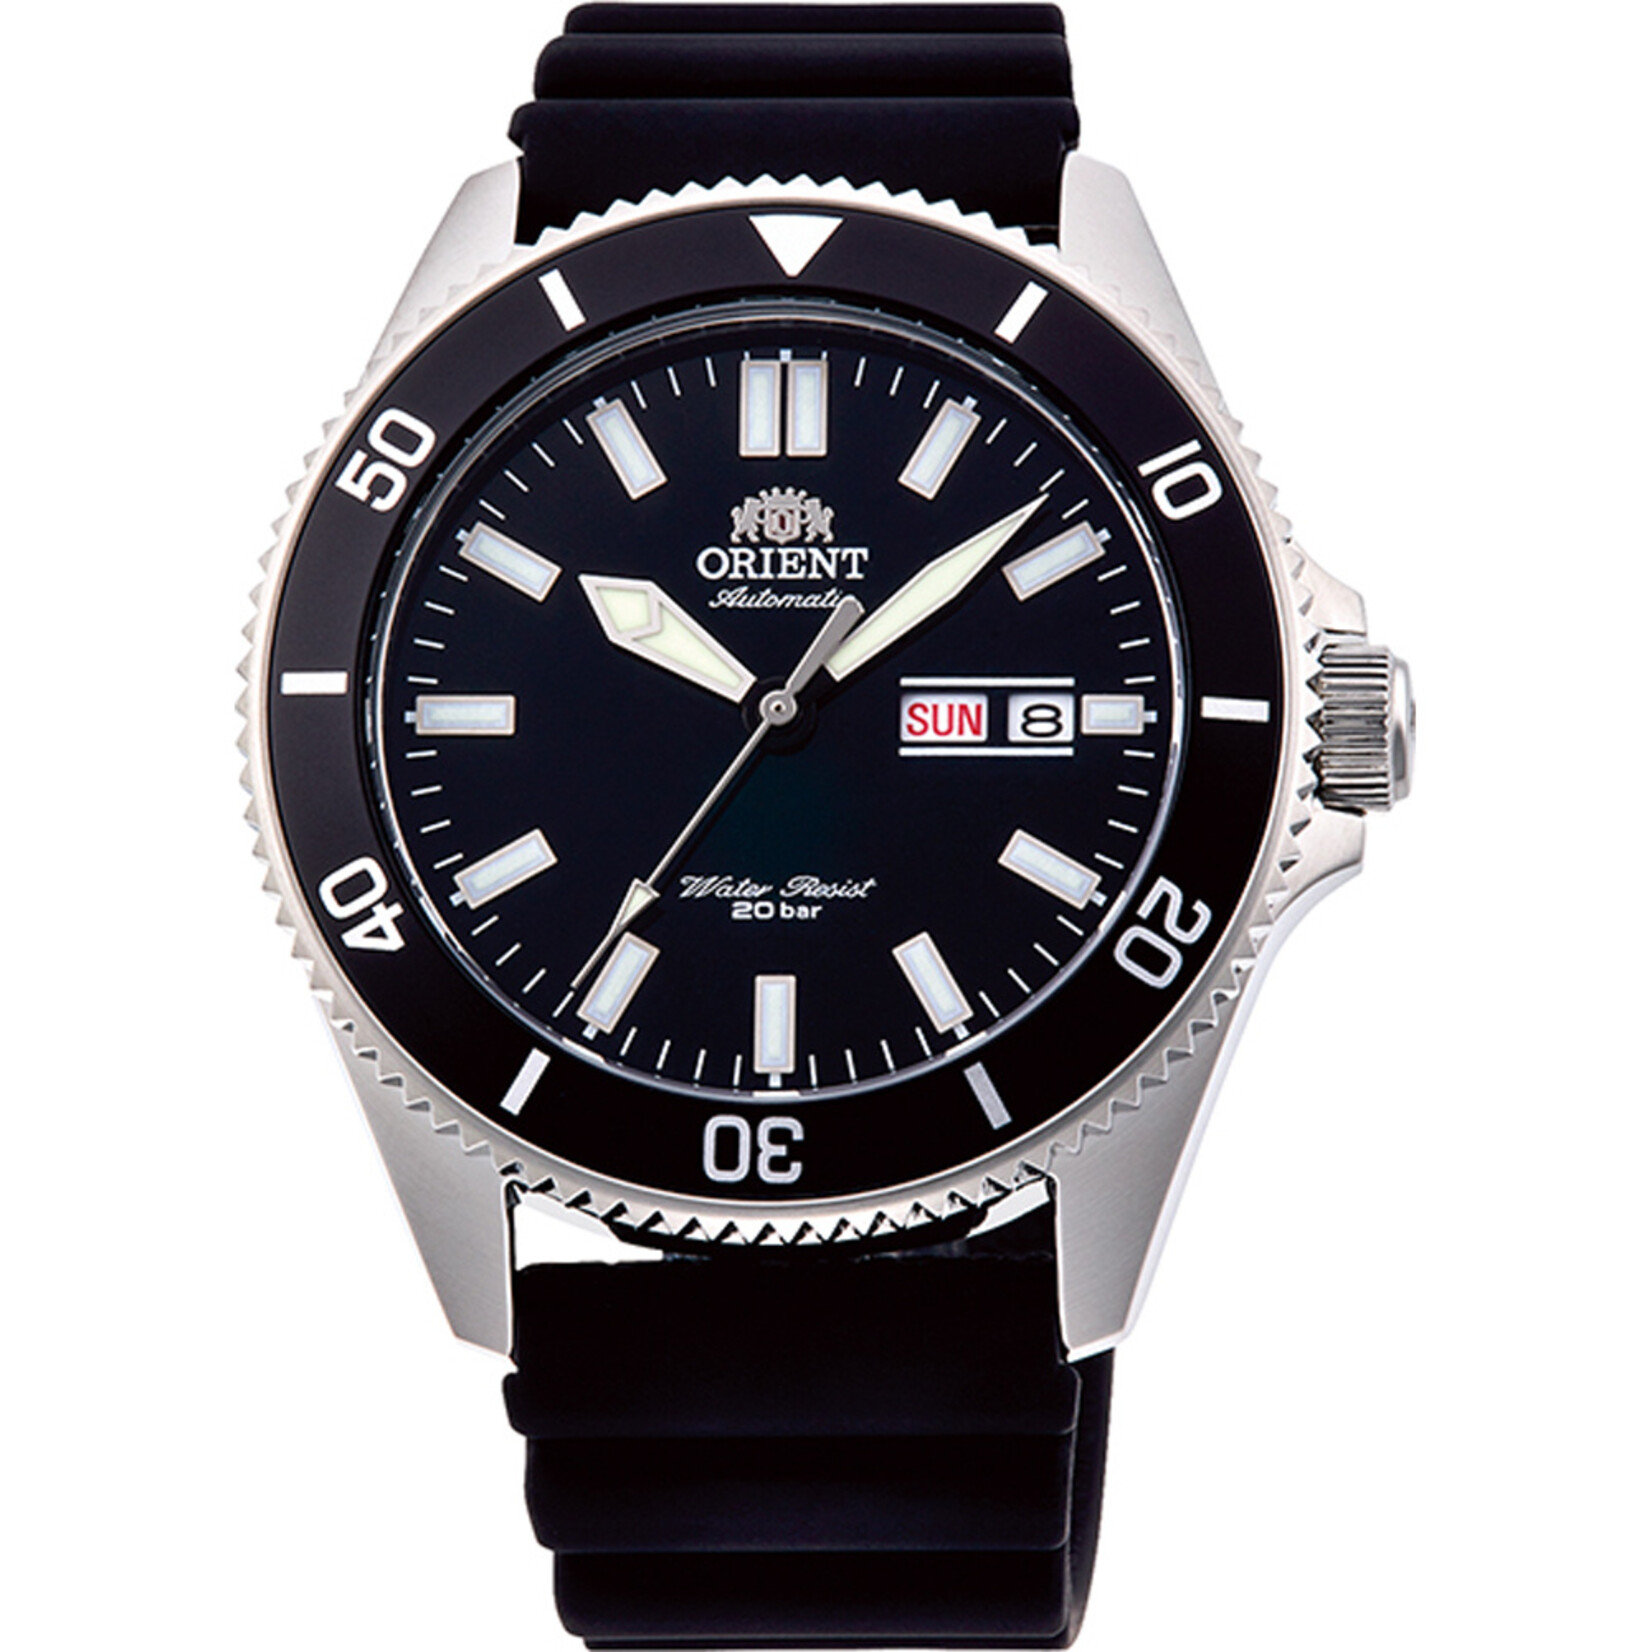 Orient Orient Horloge ra-aa0010b19b Automaat duiker 20ATM